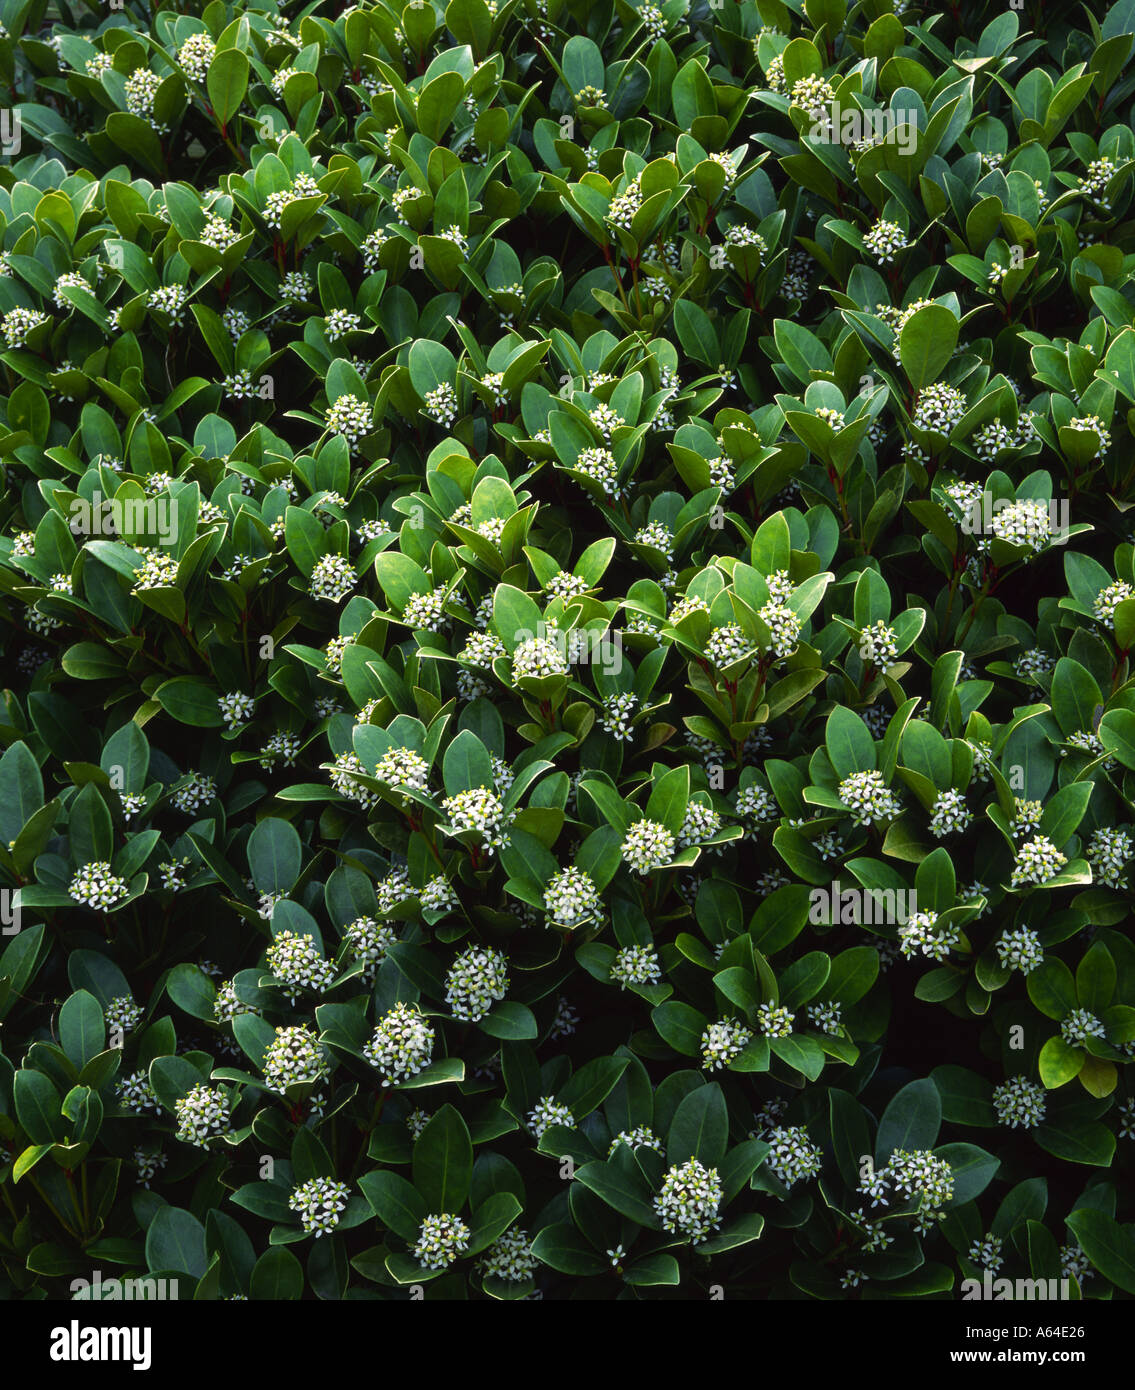 Skimmia shrub with white flowers Stock Photo